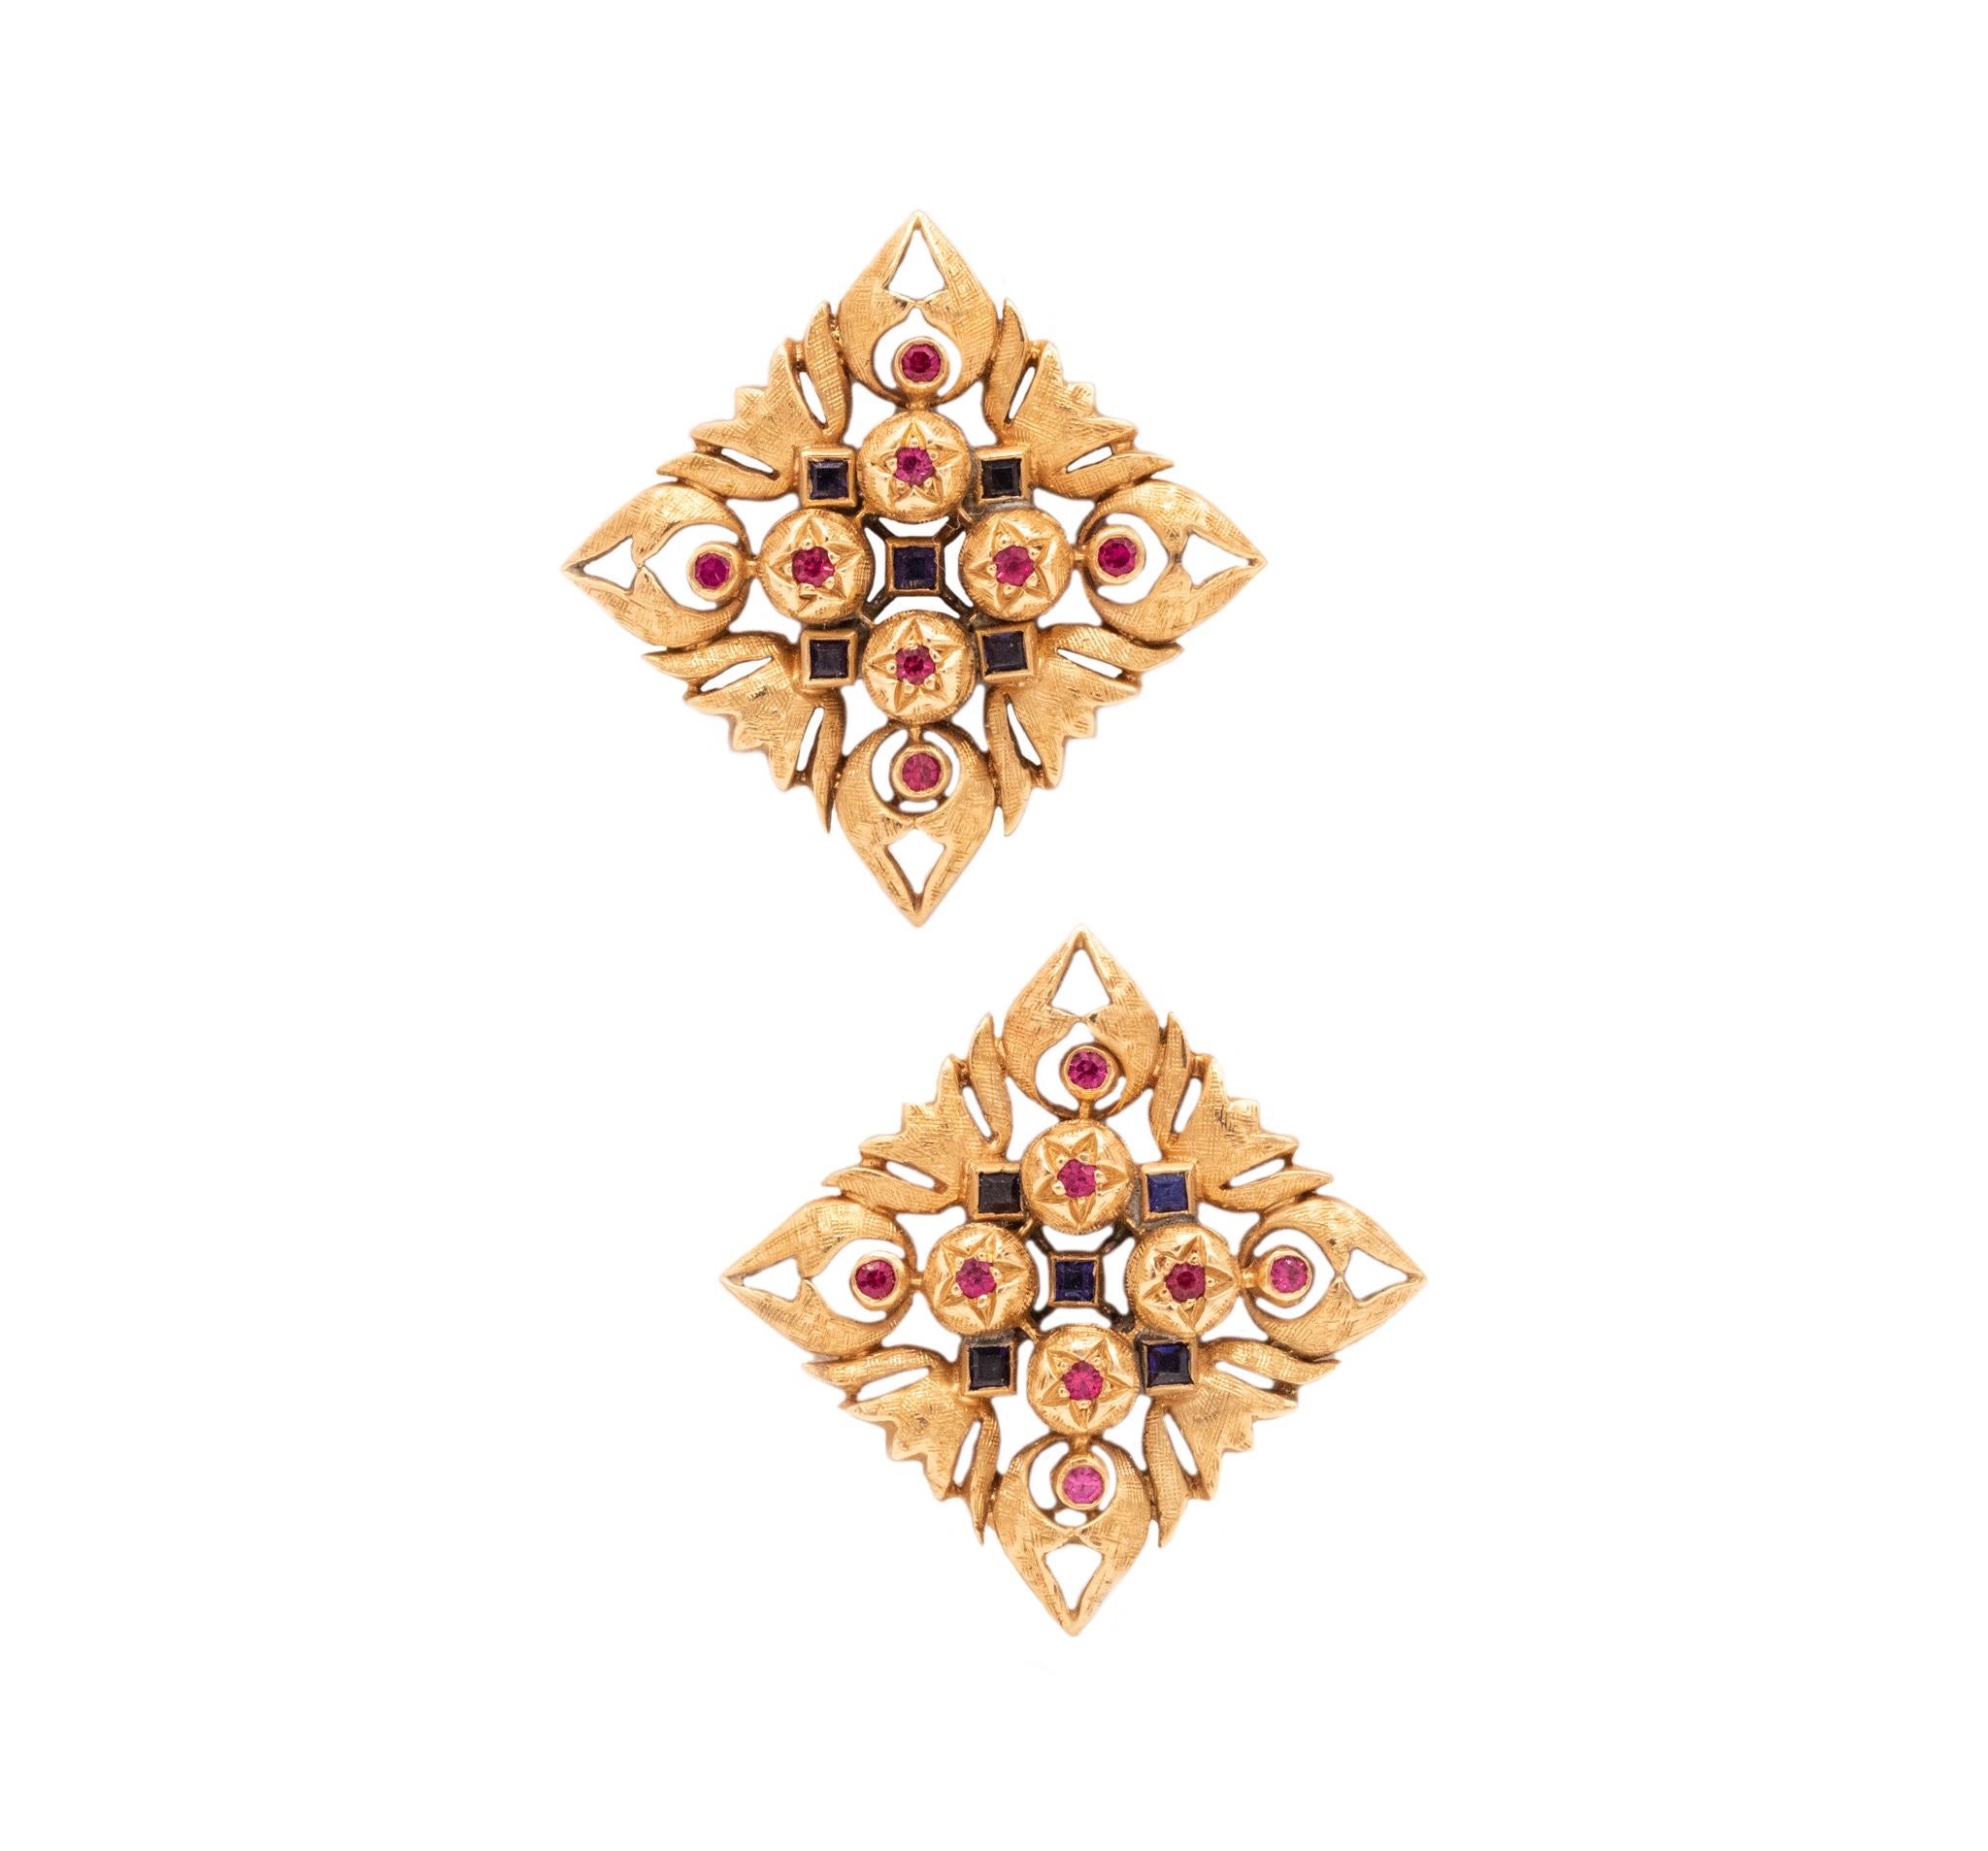 Florentiner Renaissance Paar juwelenbesetzte Klammern

Ein Vintage-Renaissance-Revival-Stück, das in den 1930er Jahren in Florenz, Italien, hergestellt wurde. Dieser wunderschöne Clip-Arring wurde aus massivem 18-karätigem Gelbgold gefertigt und mit